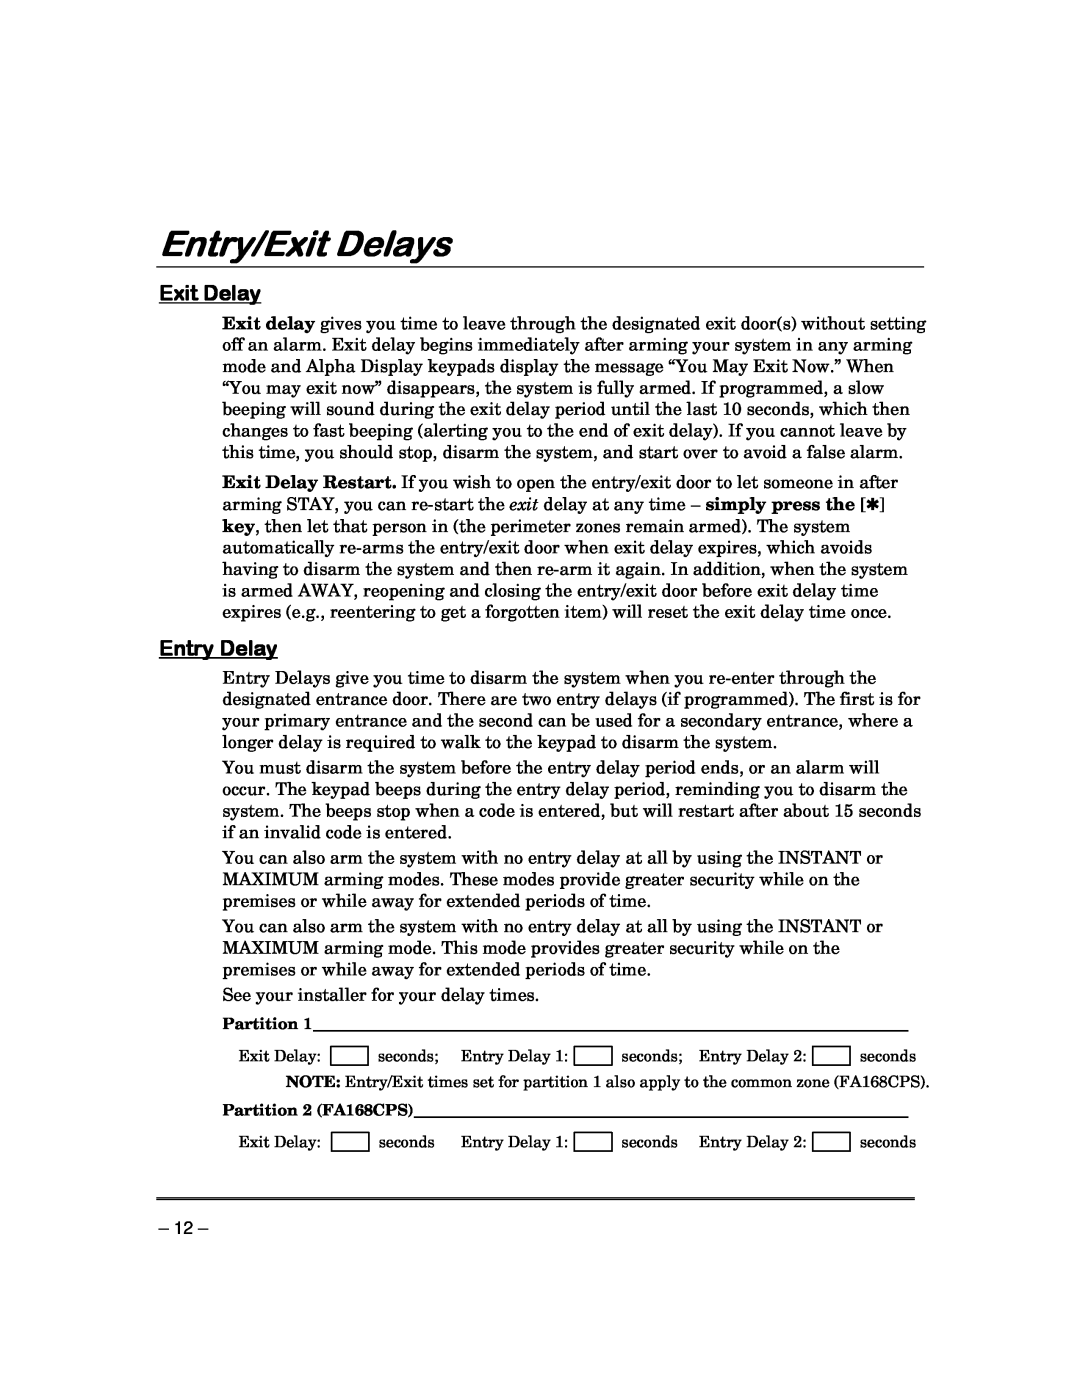 Garmin FA168CPS manual Entry/Exit Delays, Entry Delay 